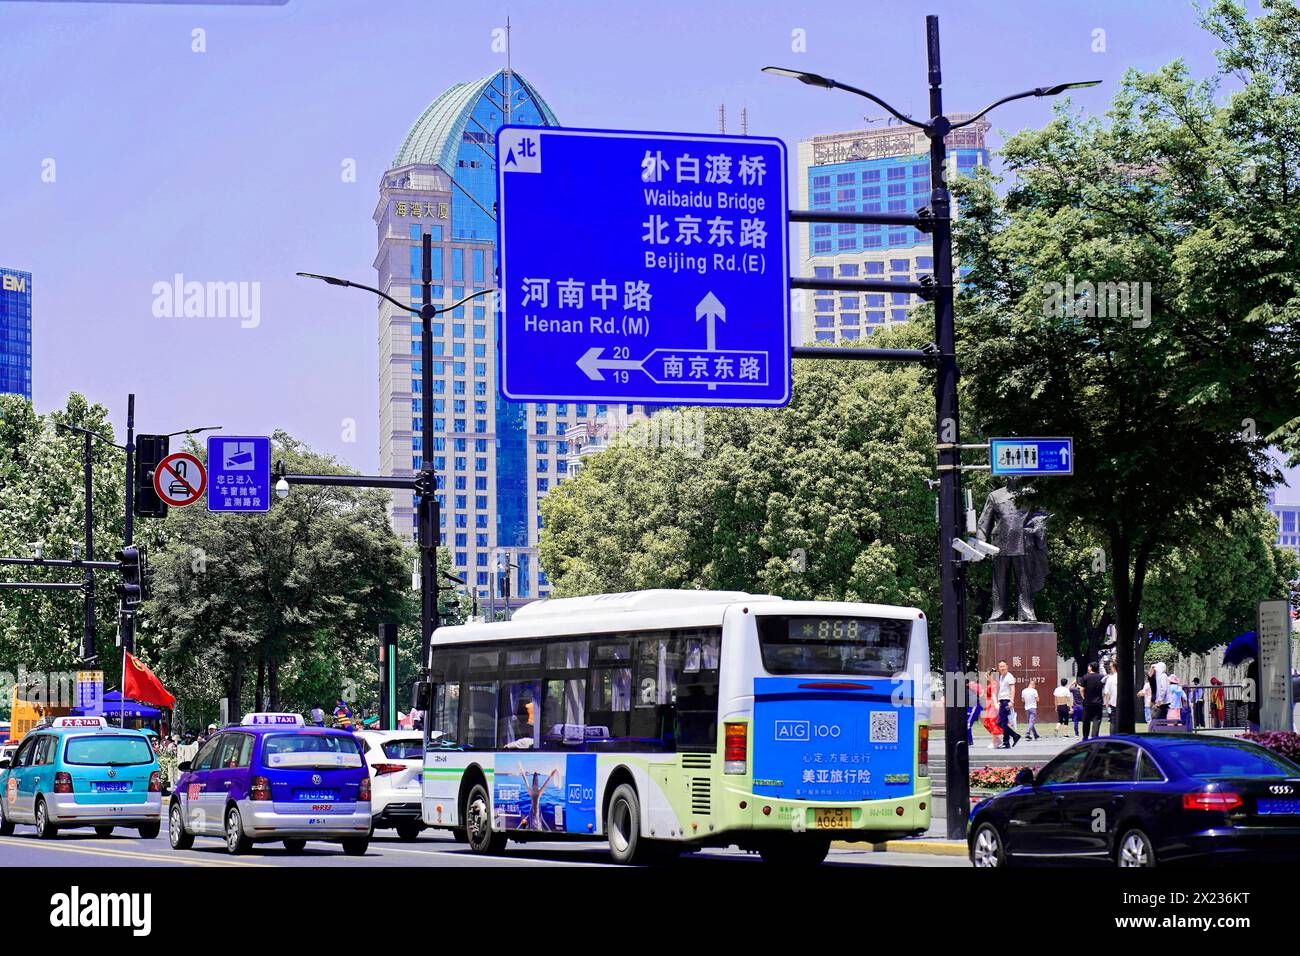 Passeggia attraverso Shanghai per raggiungere le attrazioni turistiche, Shanghai, Cina, Asia, vista di una strada trafficata con un autobus cittadino e segnali stradali Foto Stock